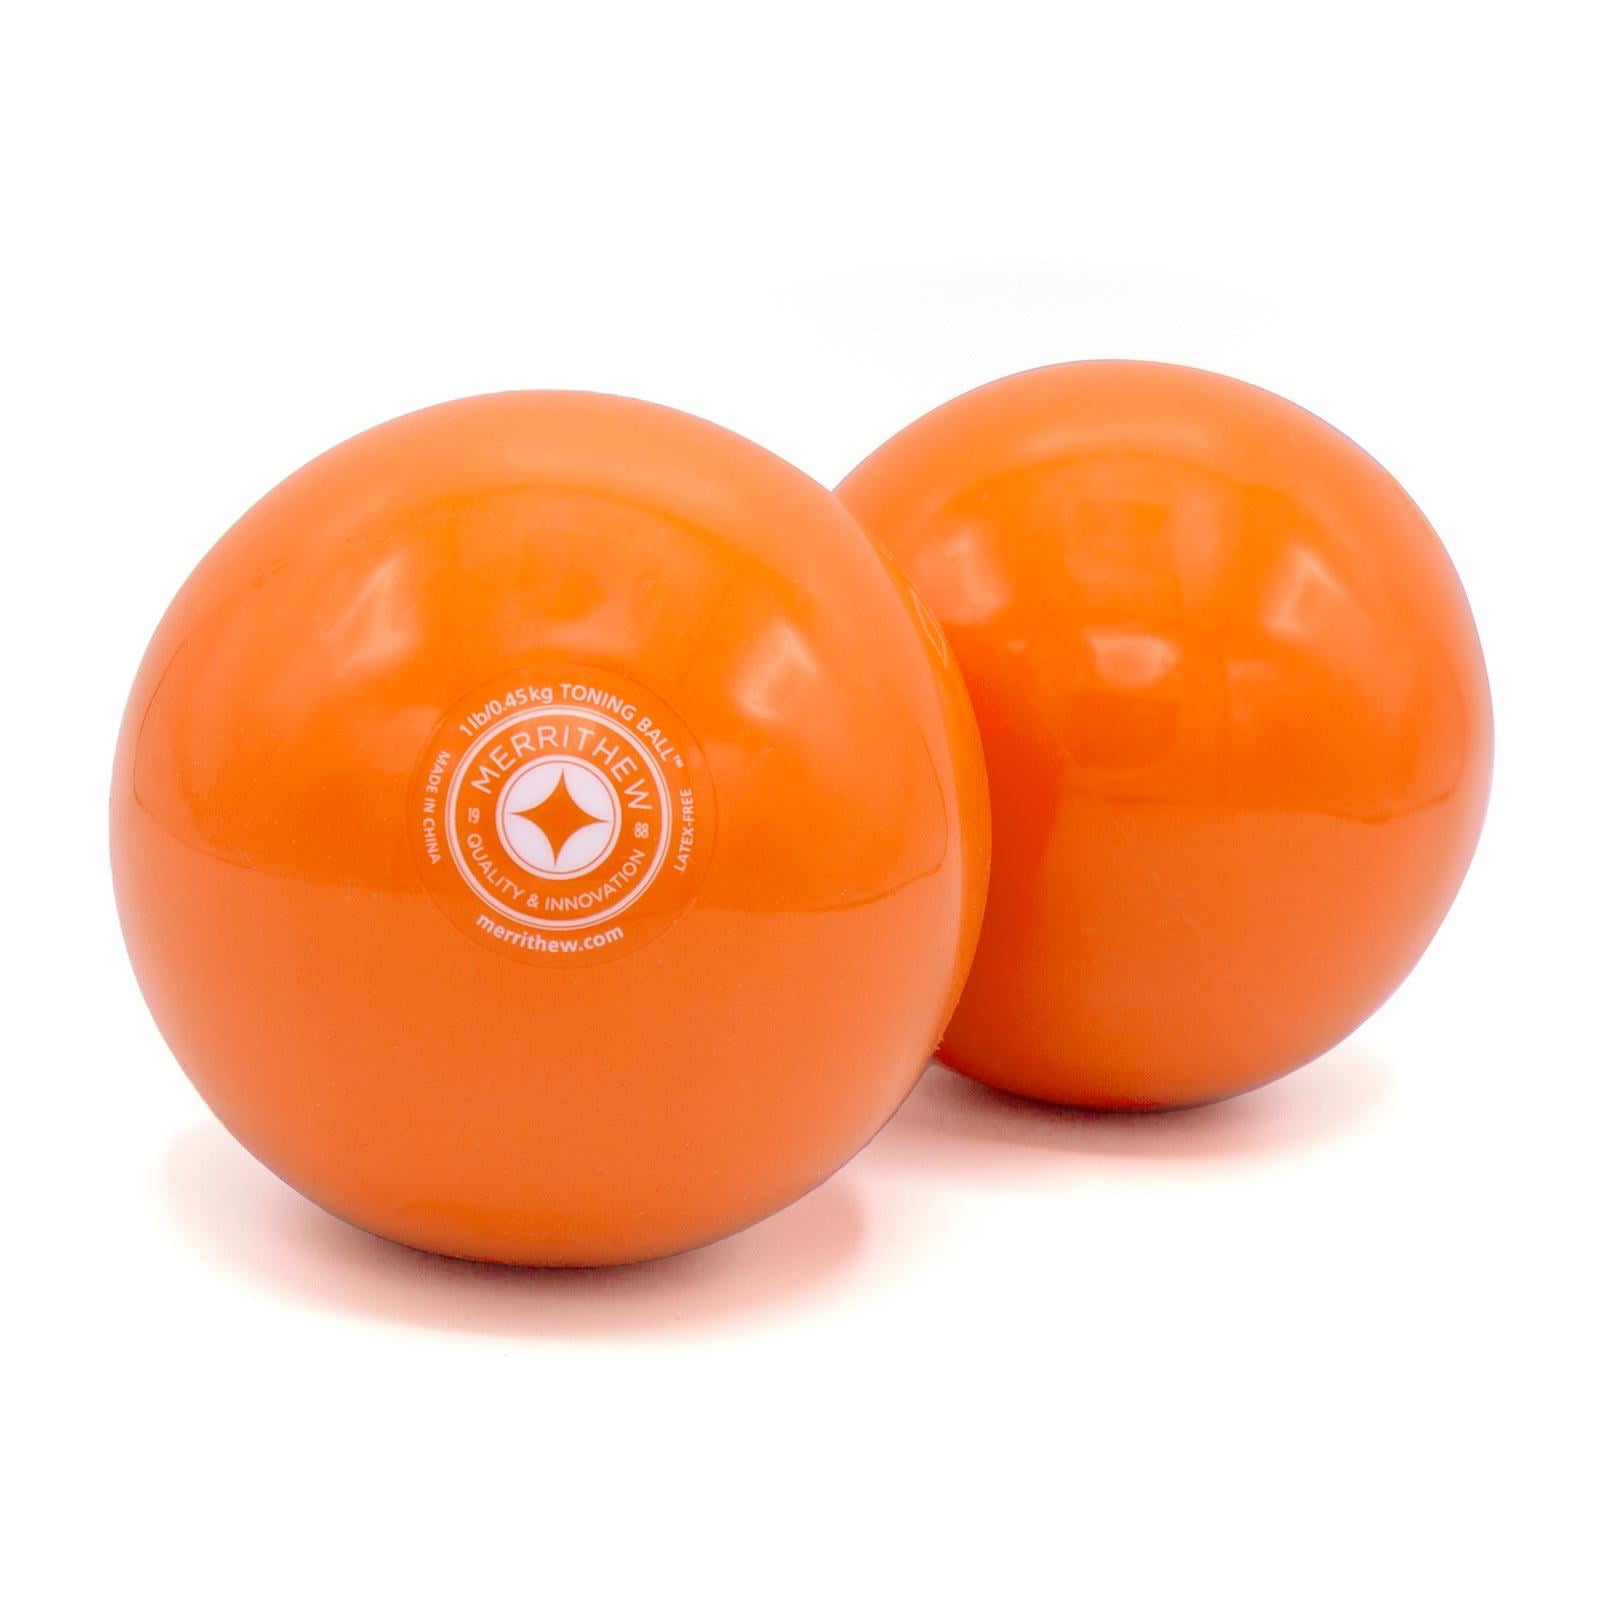 特徴 トーニングボール™は用途が広い柔軟なハンドウェイトです。 マットワークはもちろんマシンピラティスのルーチンやインターバルワークアウトに変化を与えます。 サイズ 直径10.9cm 重量 454g